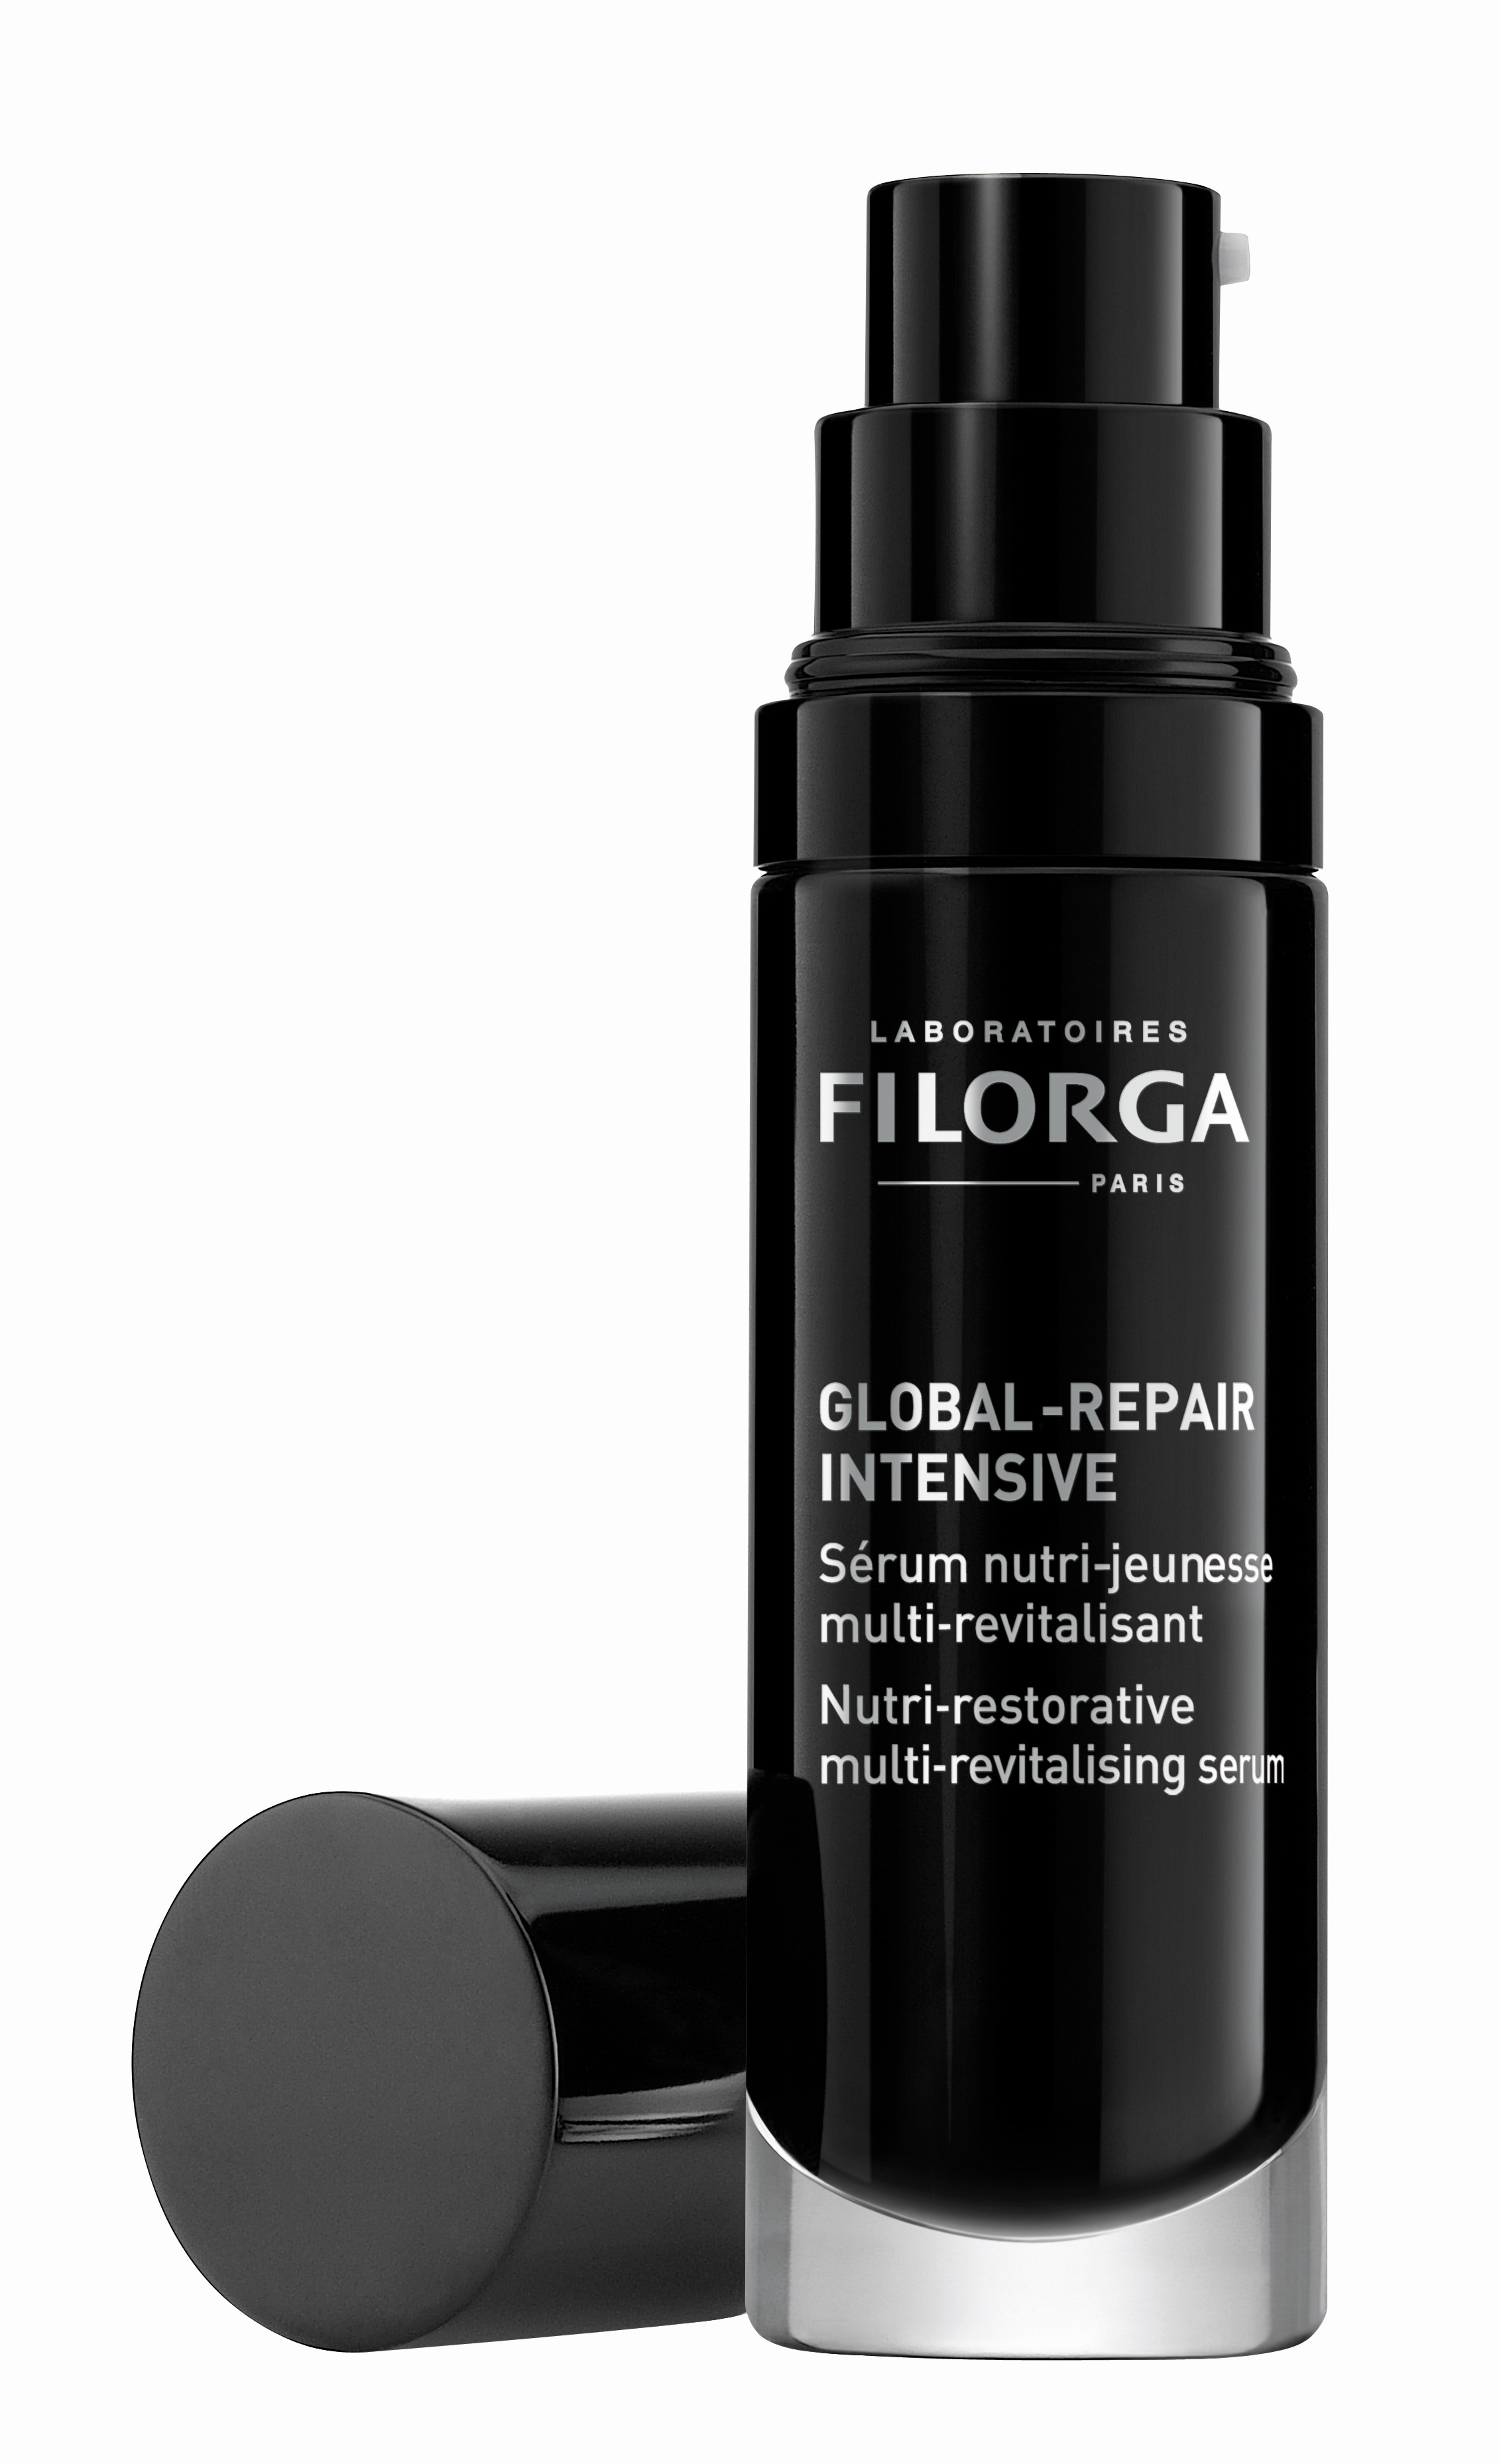 Billede af Filorga Global-Repair Intensive Serum (30 ml) hos Well.dk